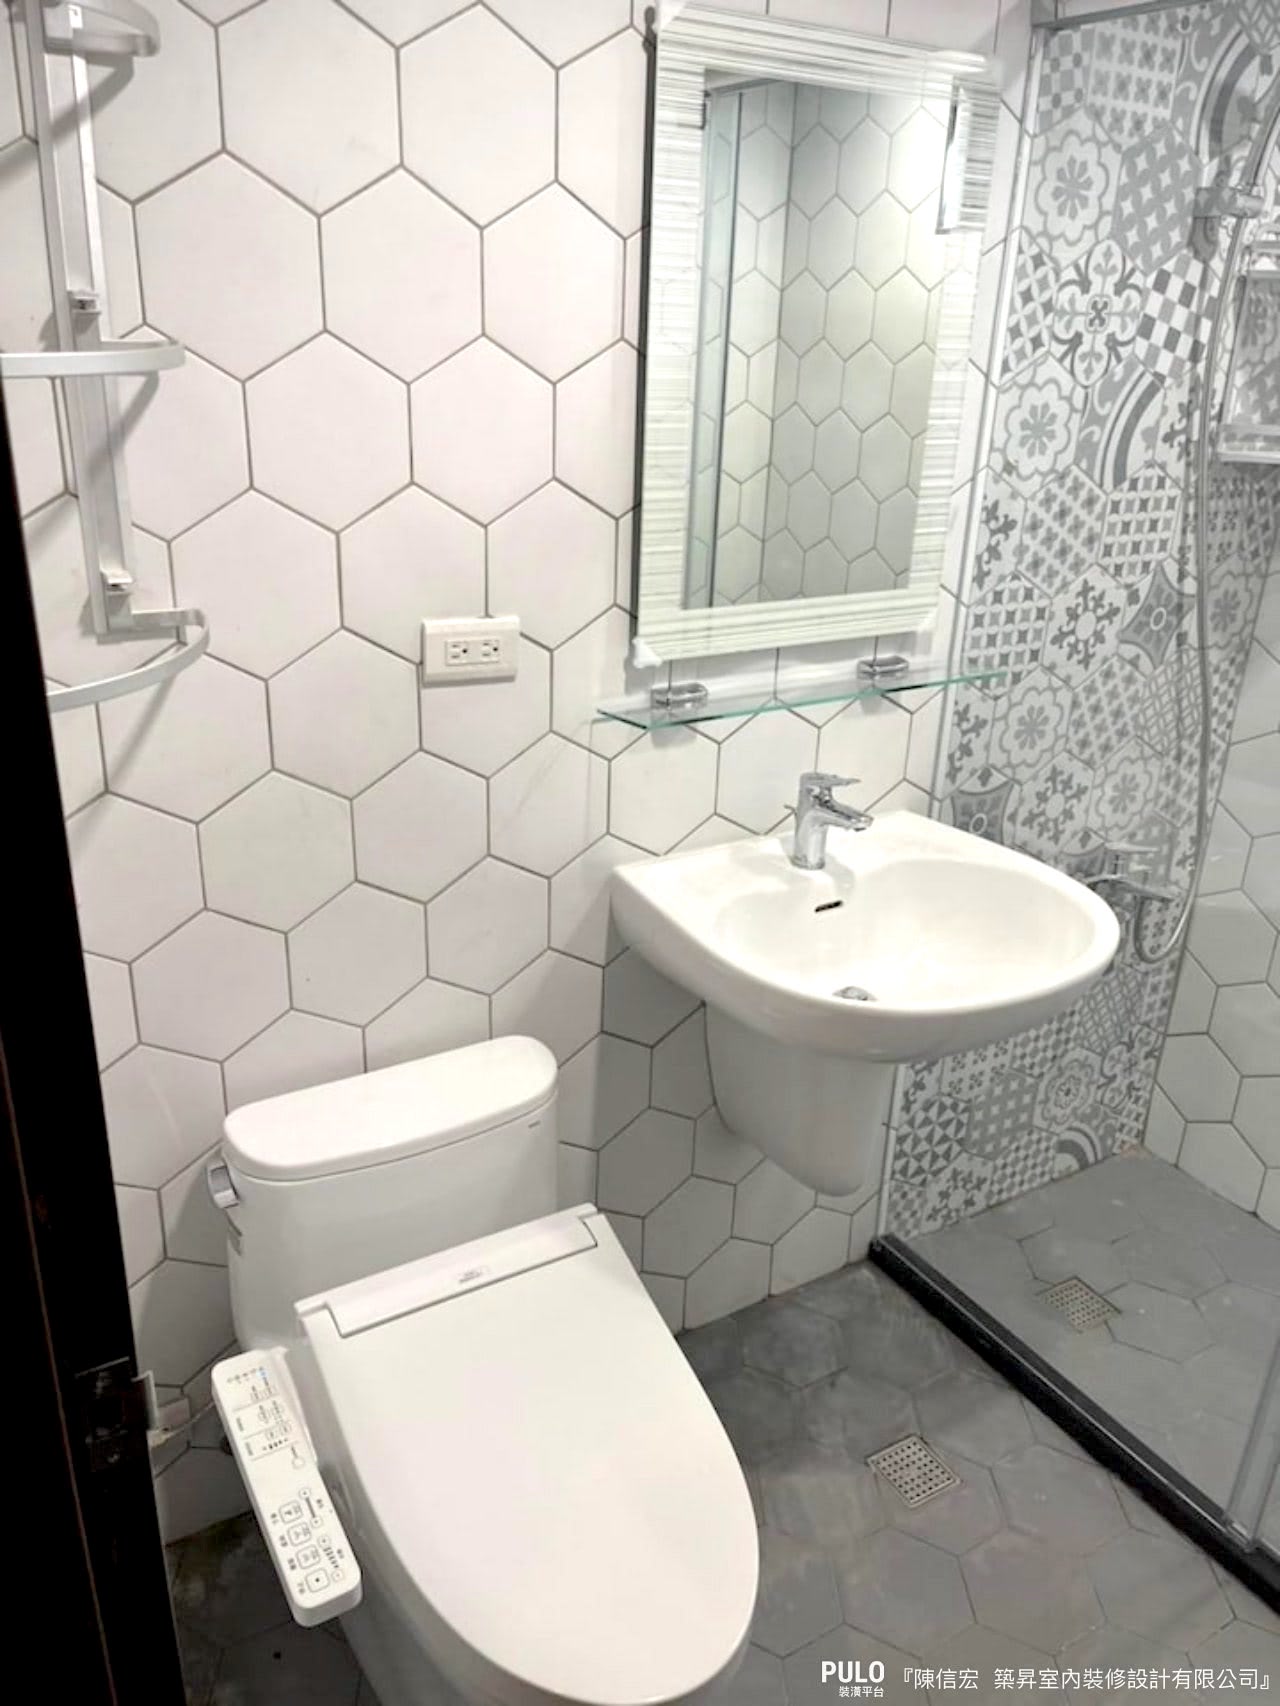 從方形到六角形，花磚的運用不僅出現在玄關地面，在浴室中的設計也能帶來許多不同的風格及樂趣！築昇室內裝修設計有限公司作品- PULO裝潢平台